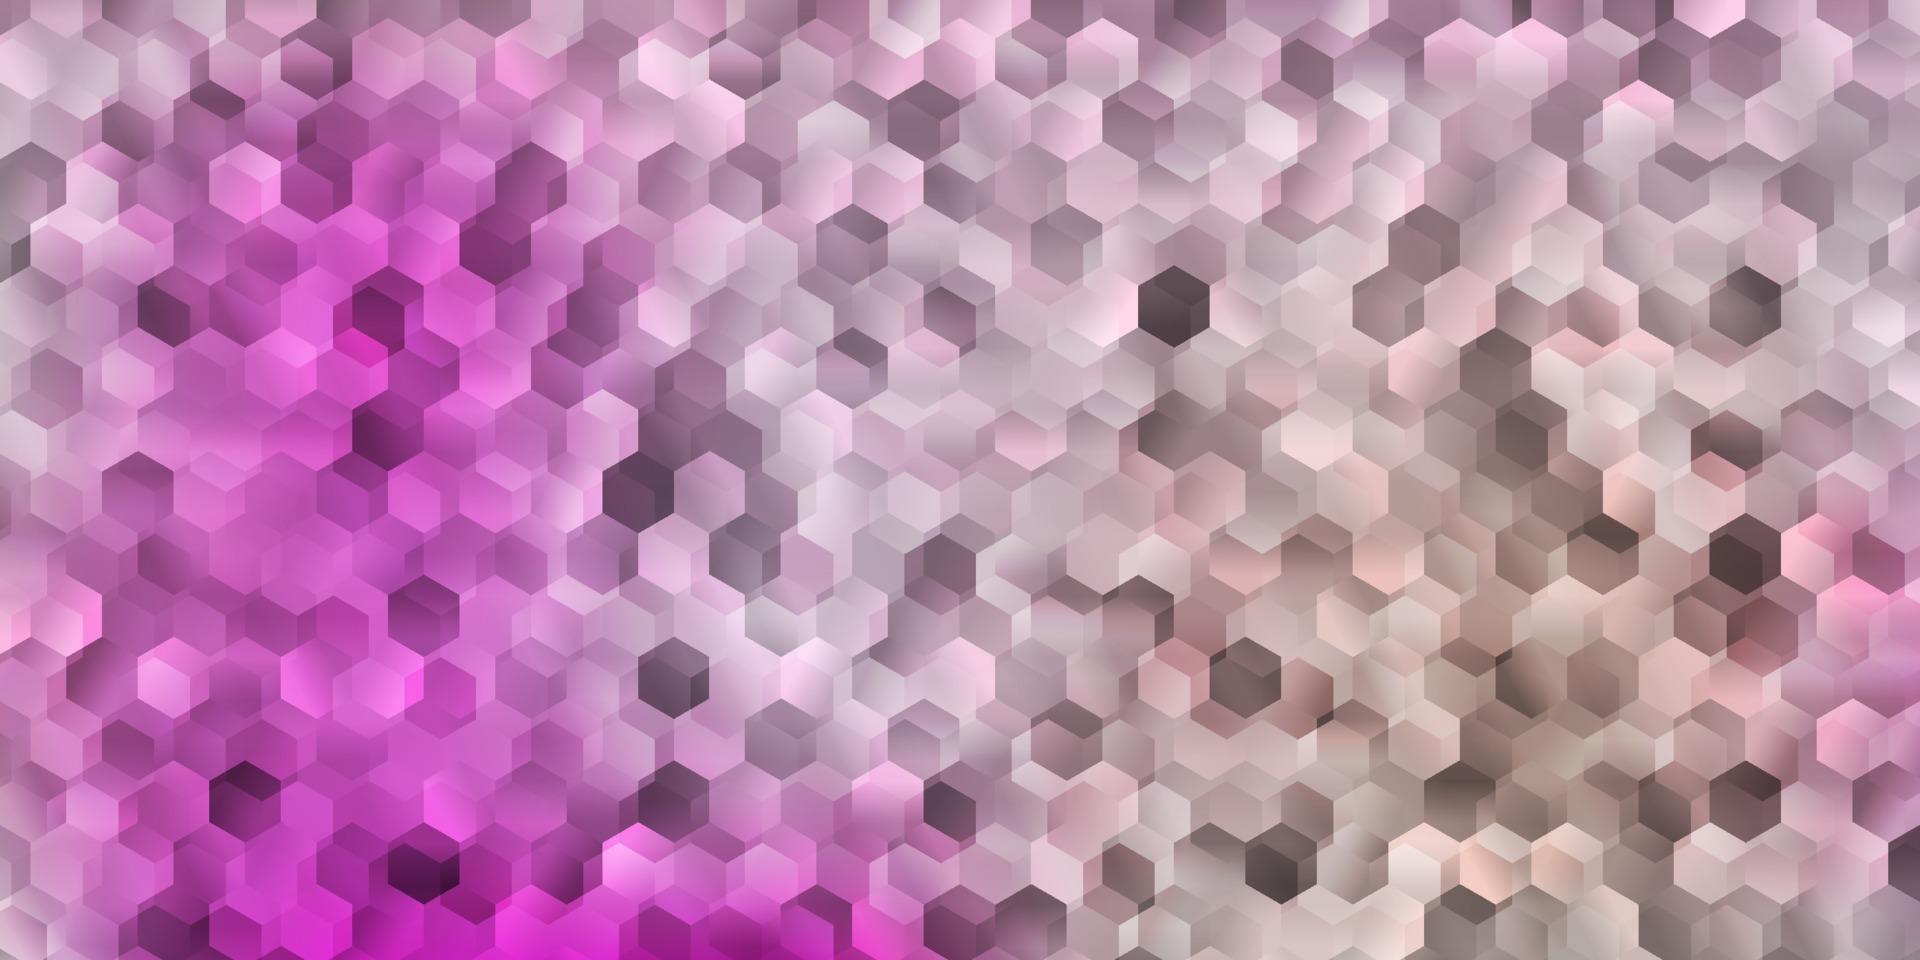 patrón de vector rosa claro con hexágonos.